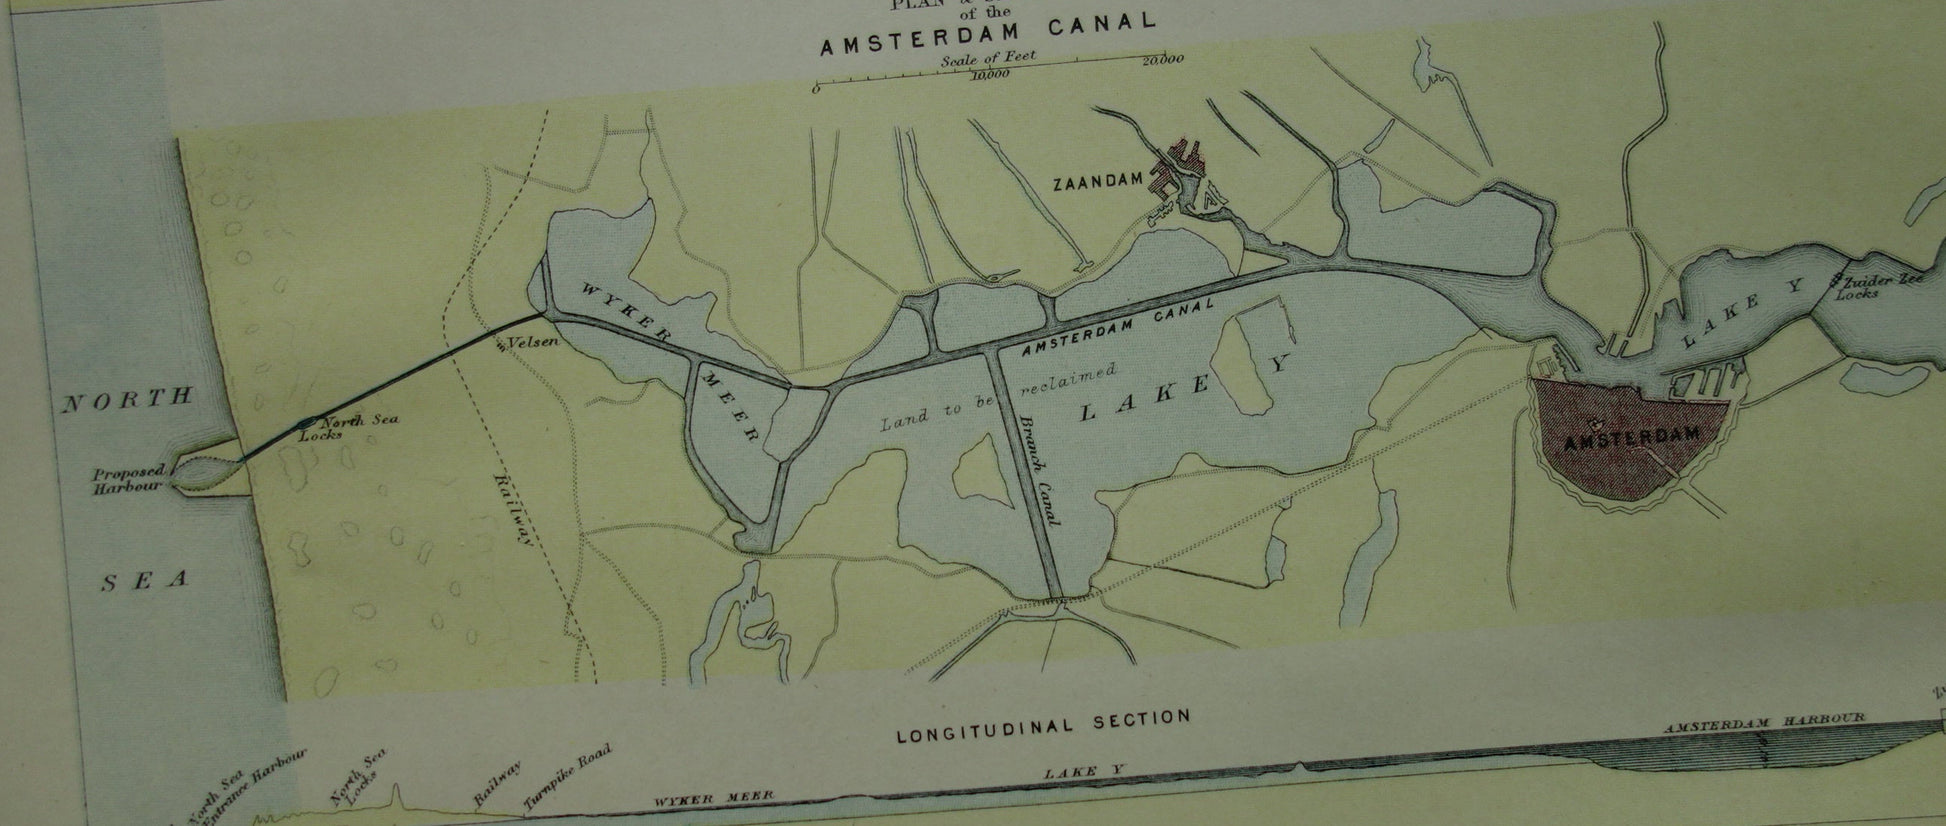 NOORDZEEKANAAL Antieke landkaart originele 140+ jaar oude Engelse kaart van het Noordzeekanaal Amsterdam Ijmuiden